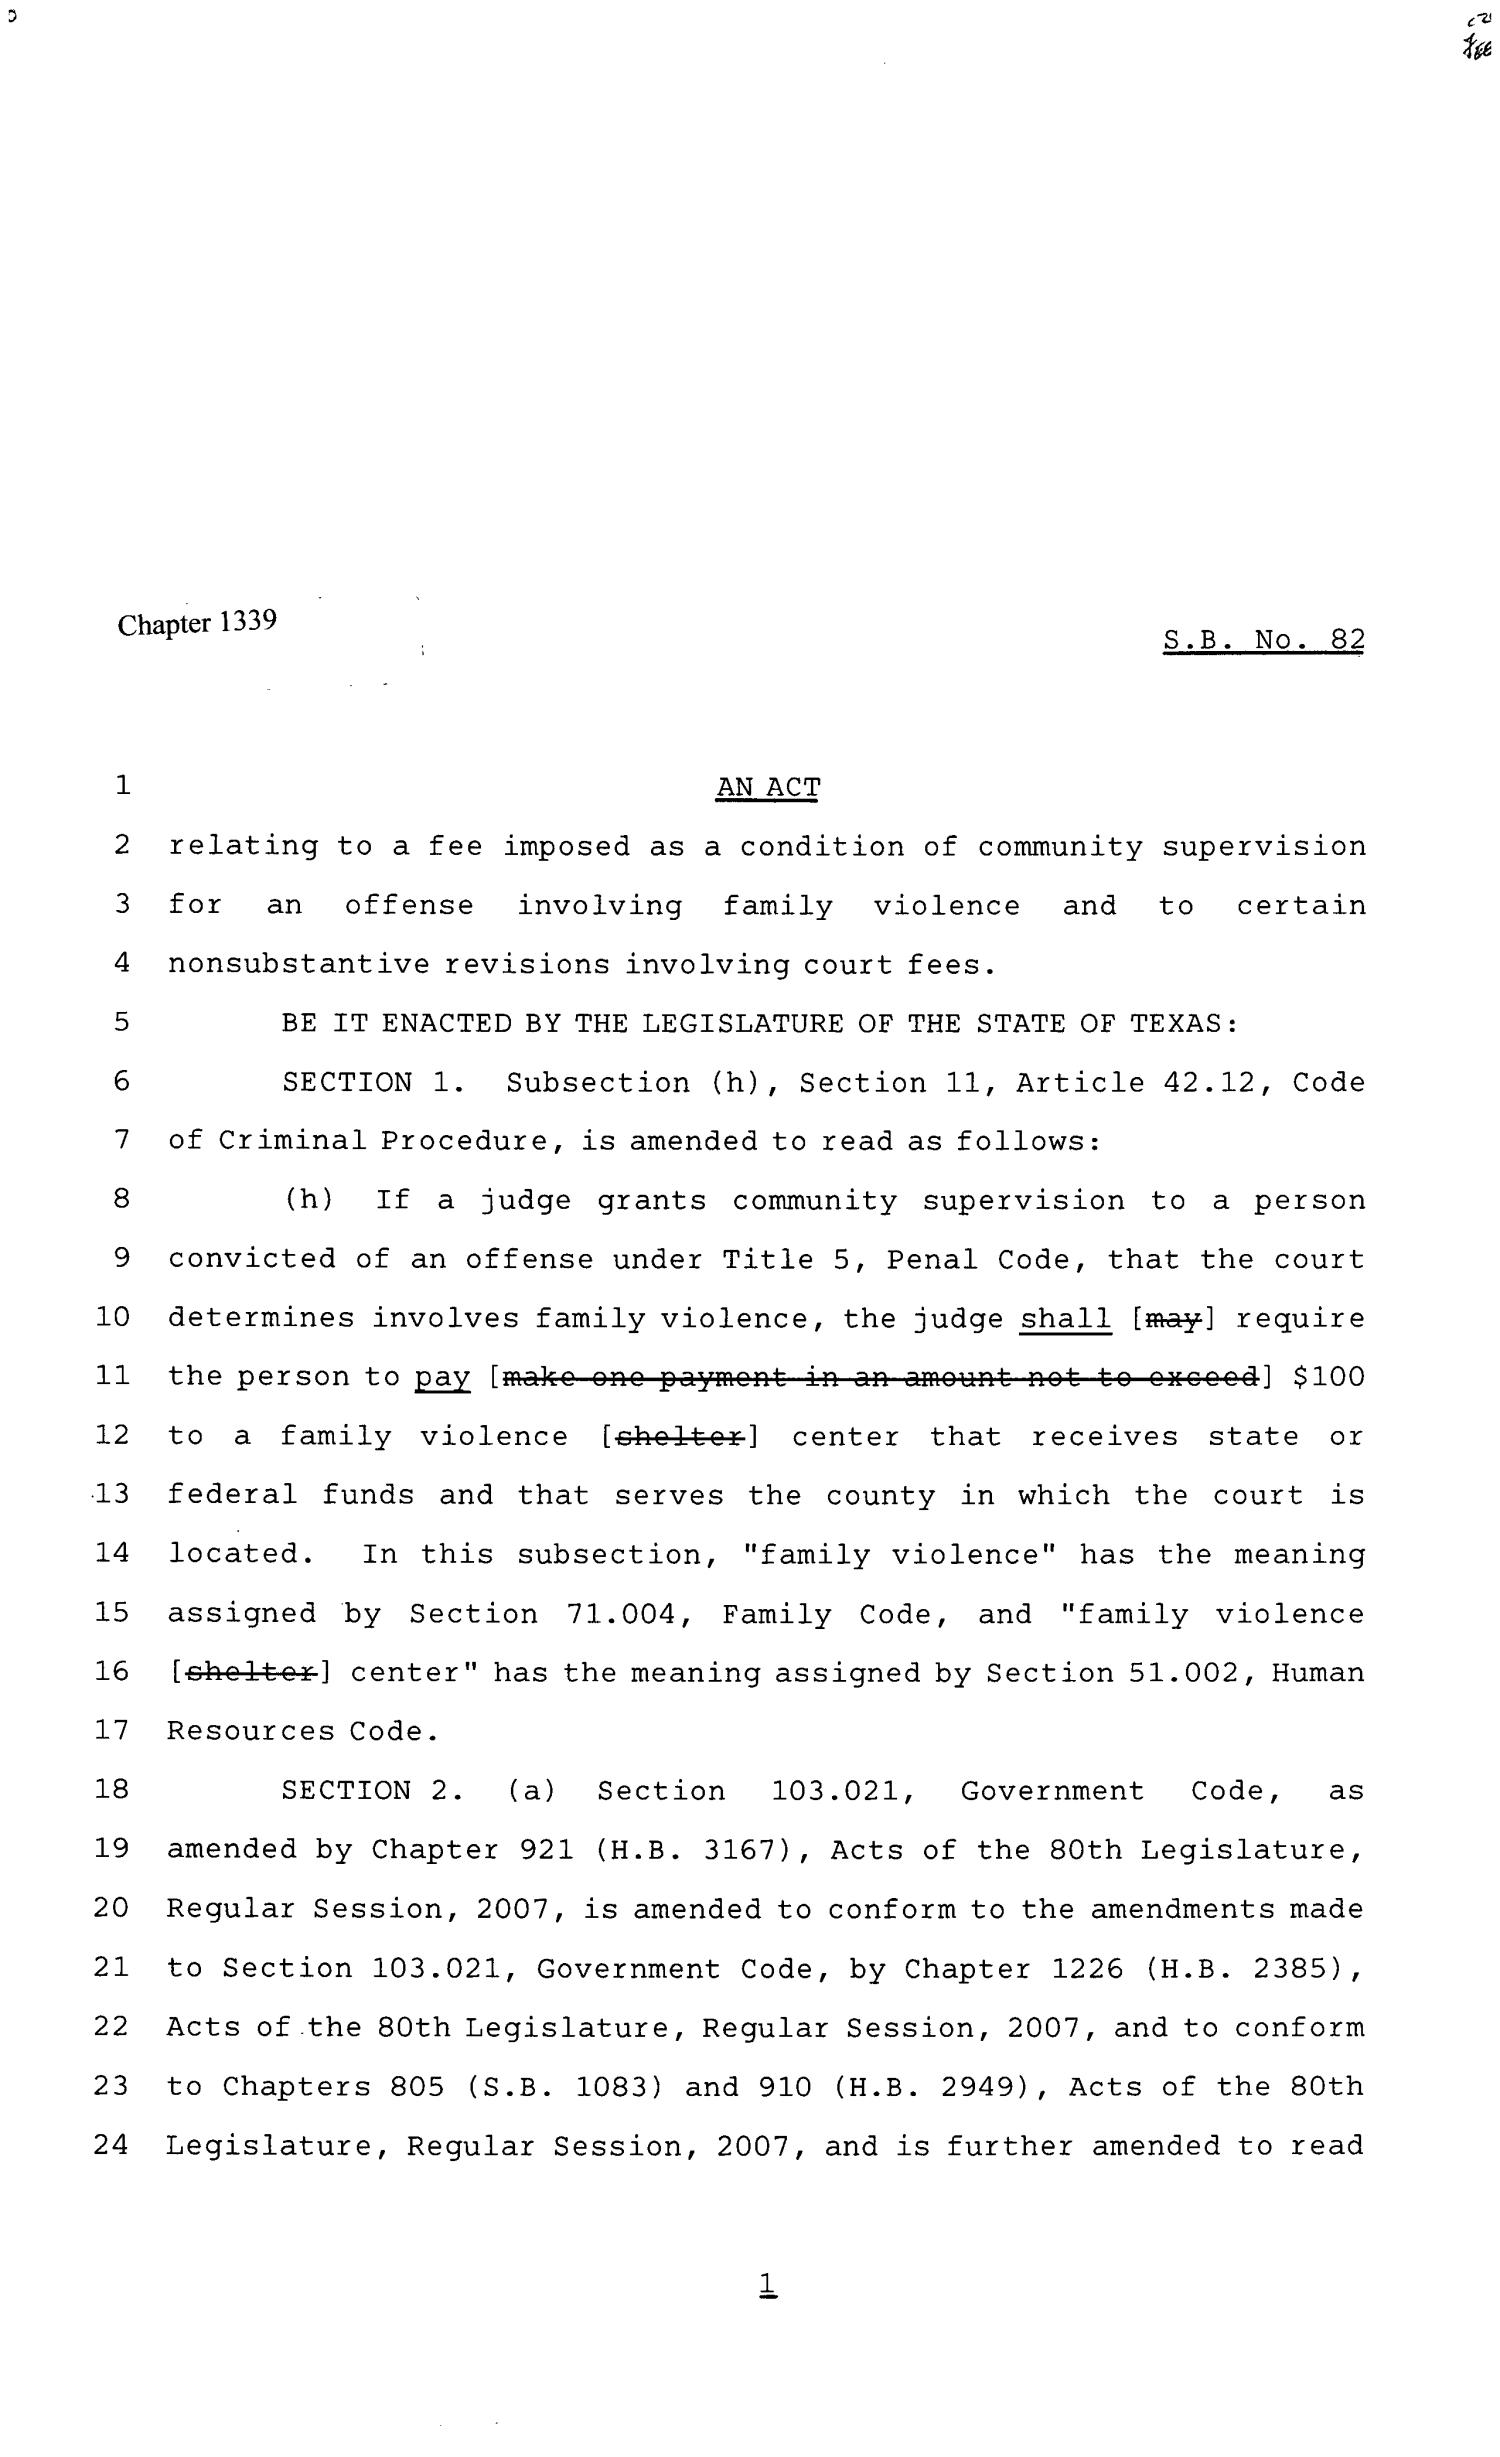 81st Texas Legislature, Senate Bill 82, Chapter 1339
                                                
                                                    [Sequence #]: 1 of 8
                                                